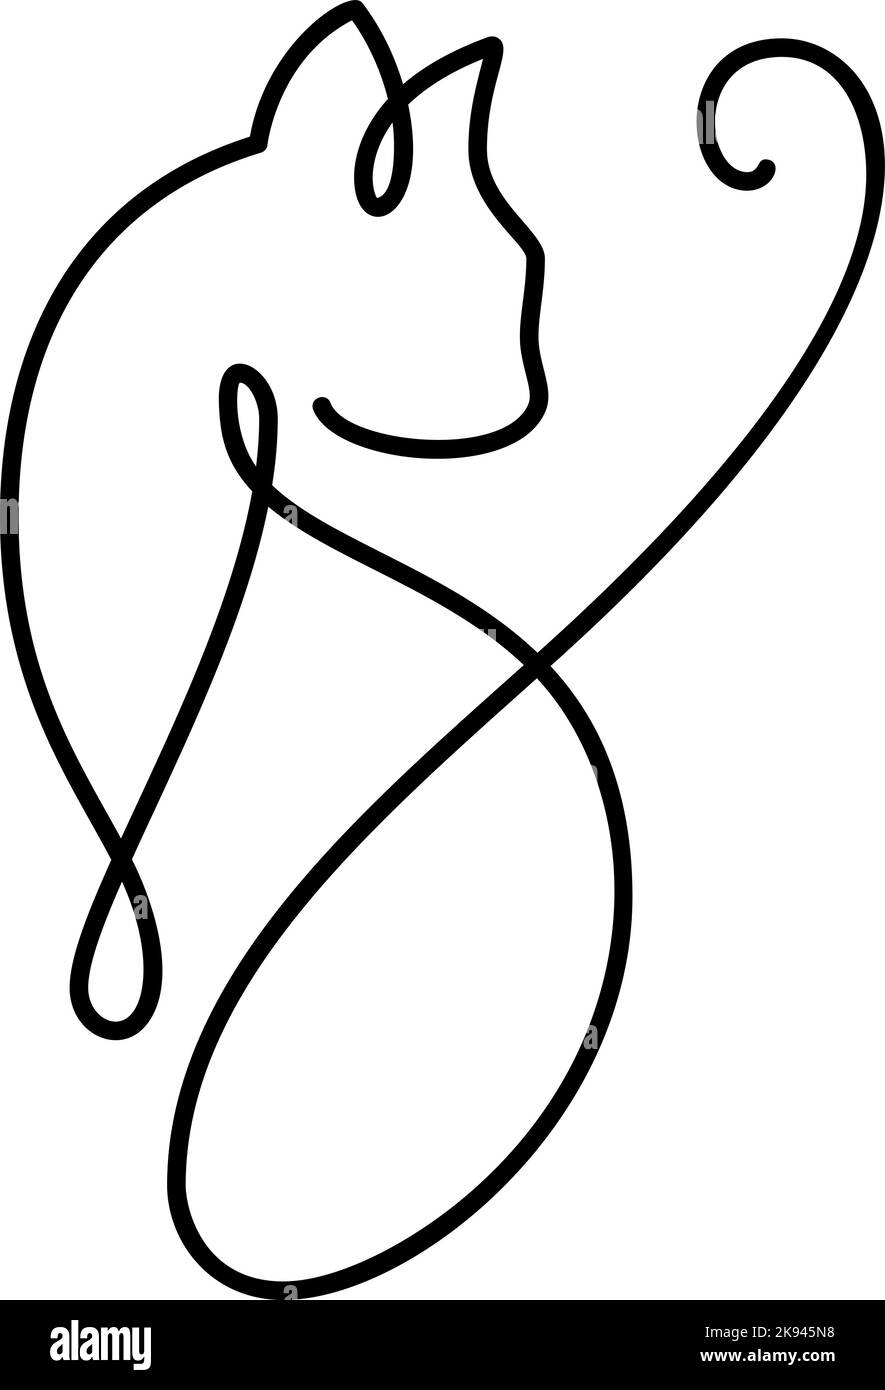 Niedliche einzeilige Vektorkatze mit Herz-Logo. Minimalistische Katze im abstrakten handgezeichneten Stil, minimalistische Einlinizeichnung. Schönes Haustier. Abstrakter minimalistischer Stil Stock Vektor